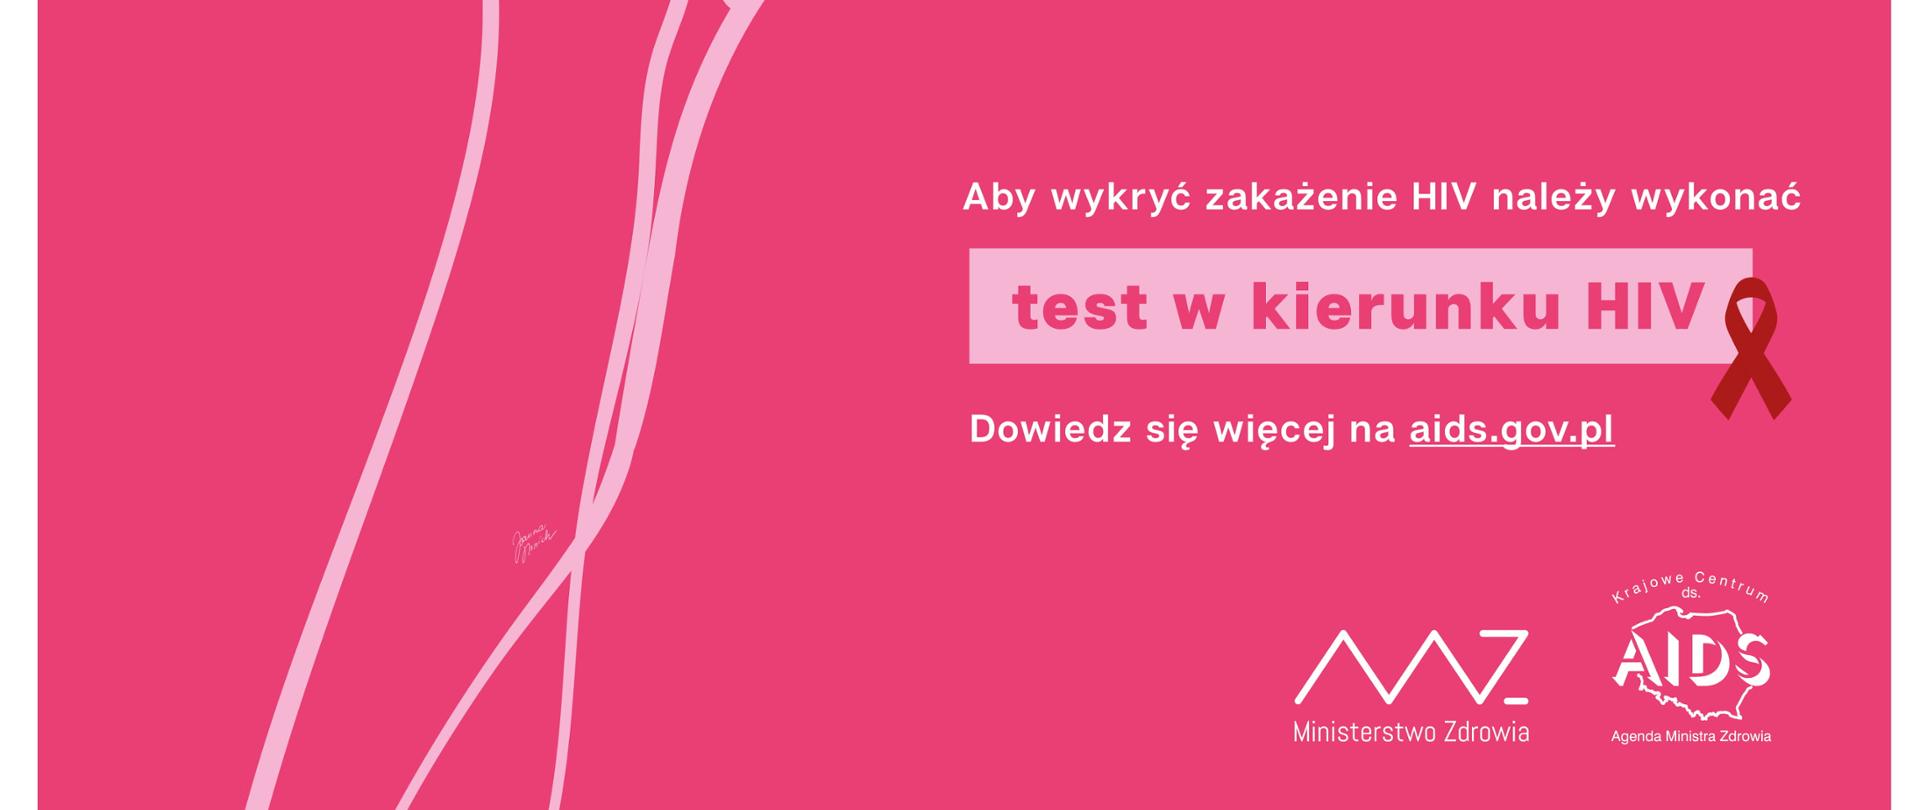 Na różowym tle widnieje grafika przedstawiająca kobietę i mężczyznę oraz tekst "HIV można zakazić się m.in. podczas kontaktów seksualnych"